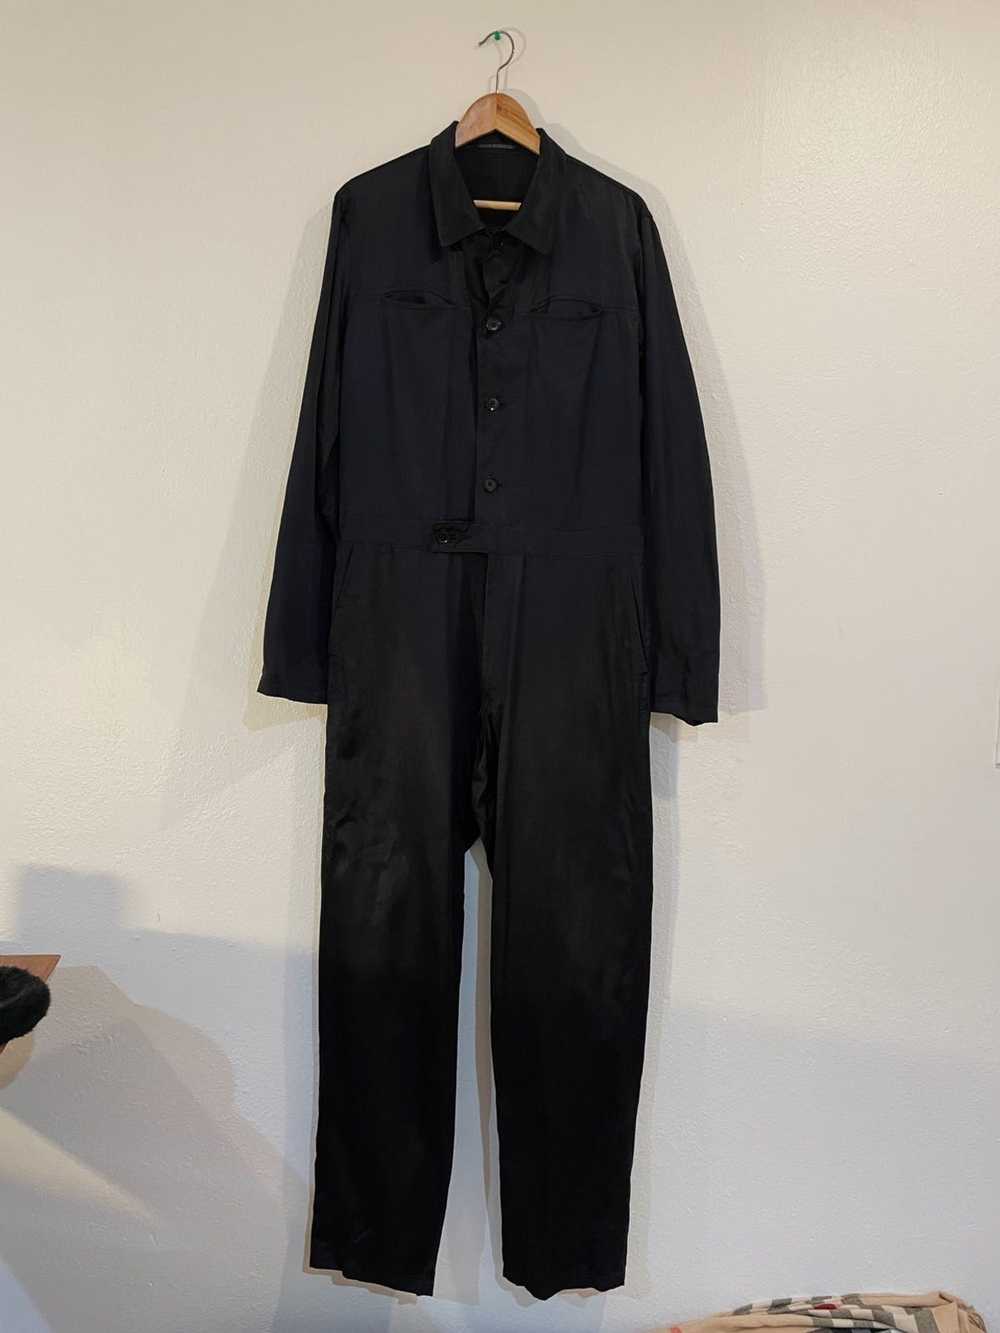 Yohji Yamamoto Coverall jumpsuit - image 1